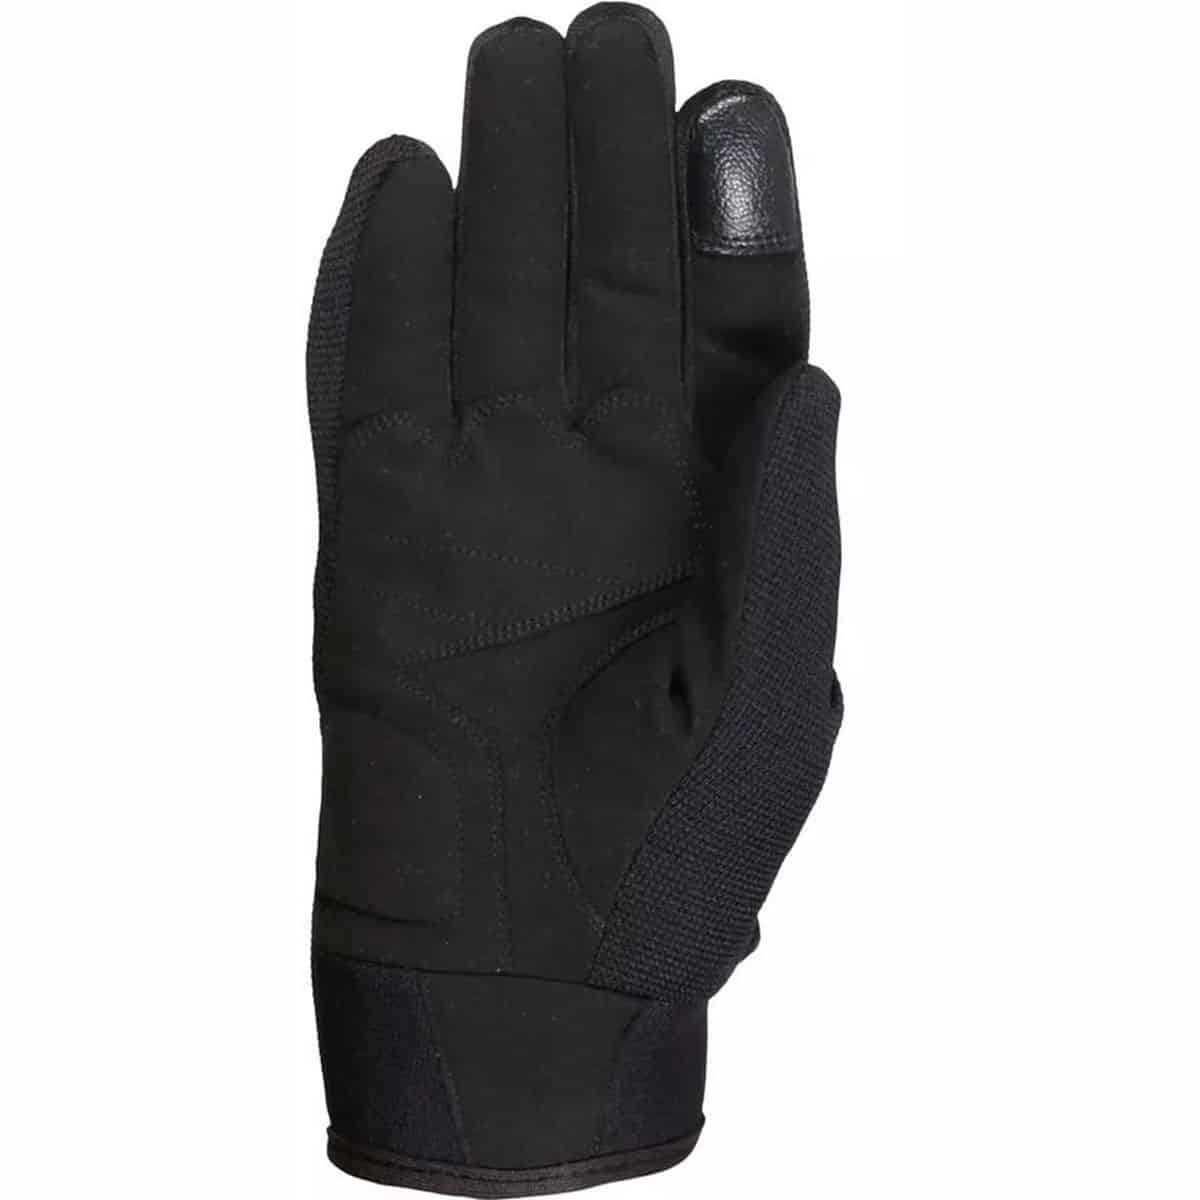 Weise Pit lightweight summer motorcycle gloves black neon 2